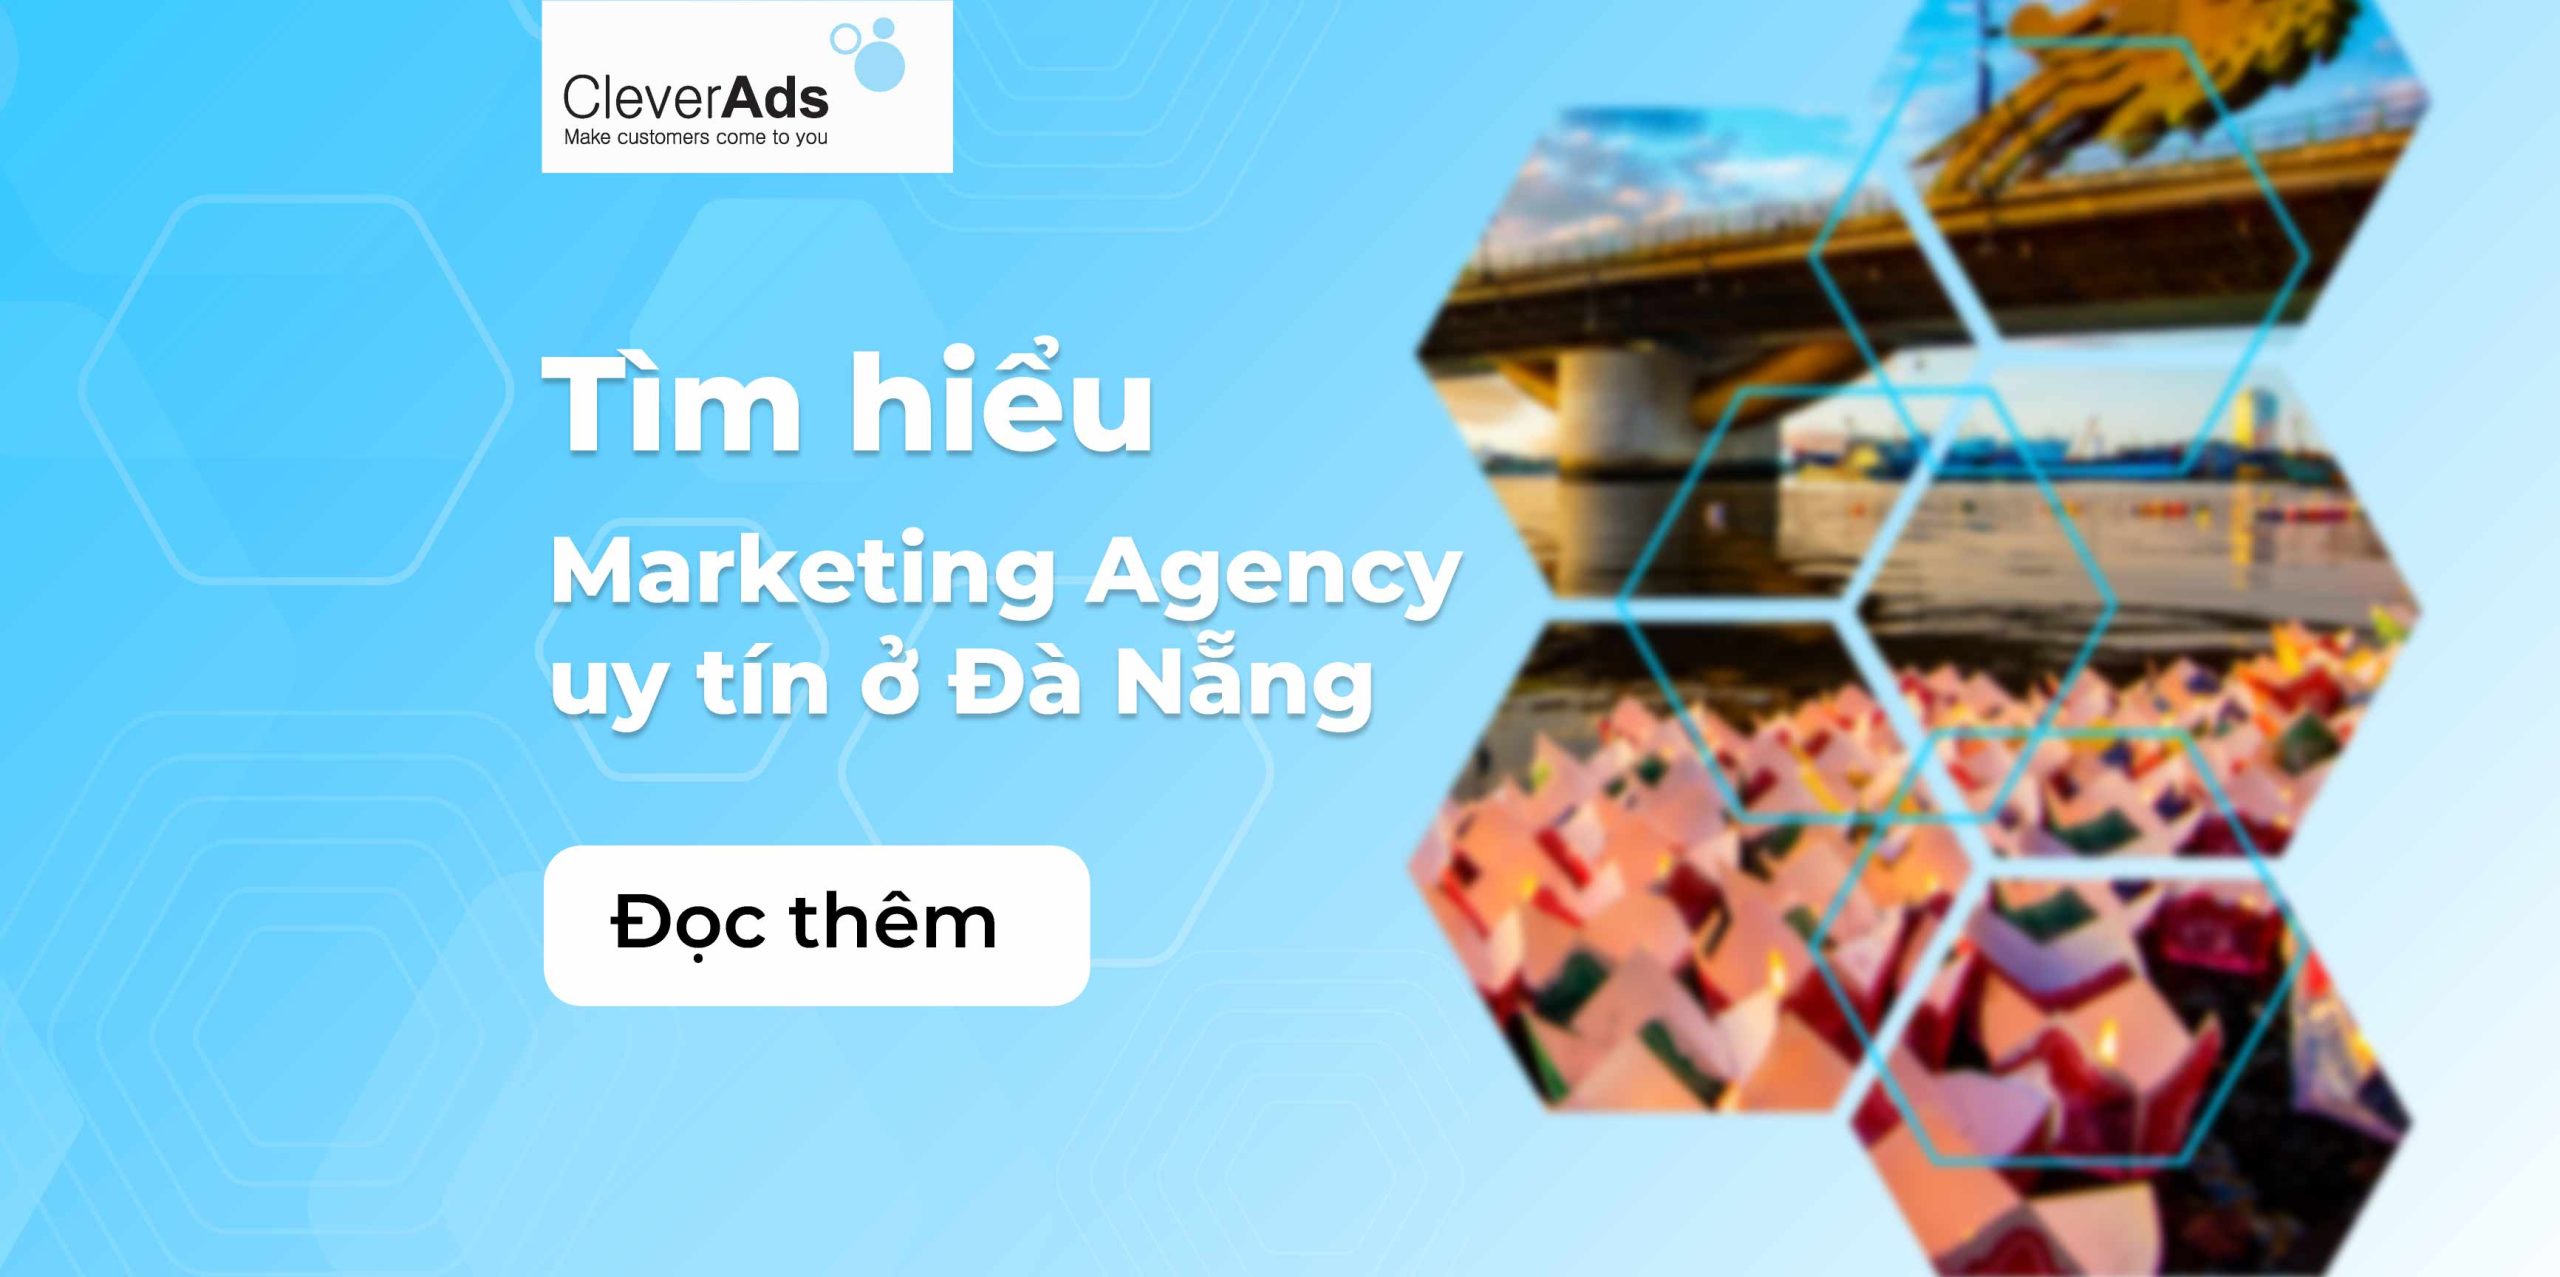 Marketing Agency Đà Nẵng uy tín mà doanh nghiệp nên biết